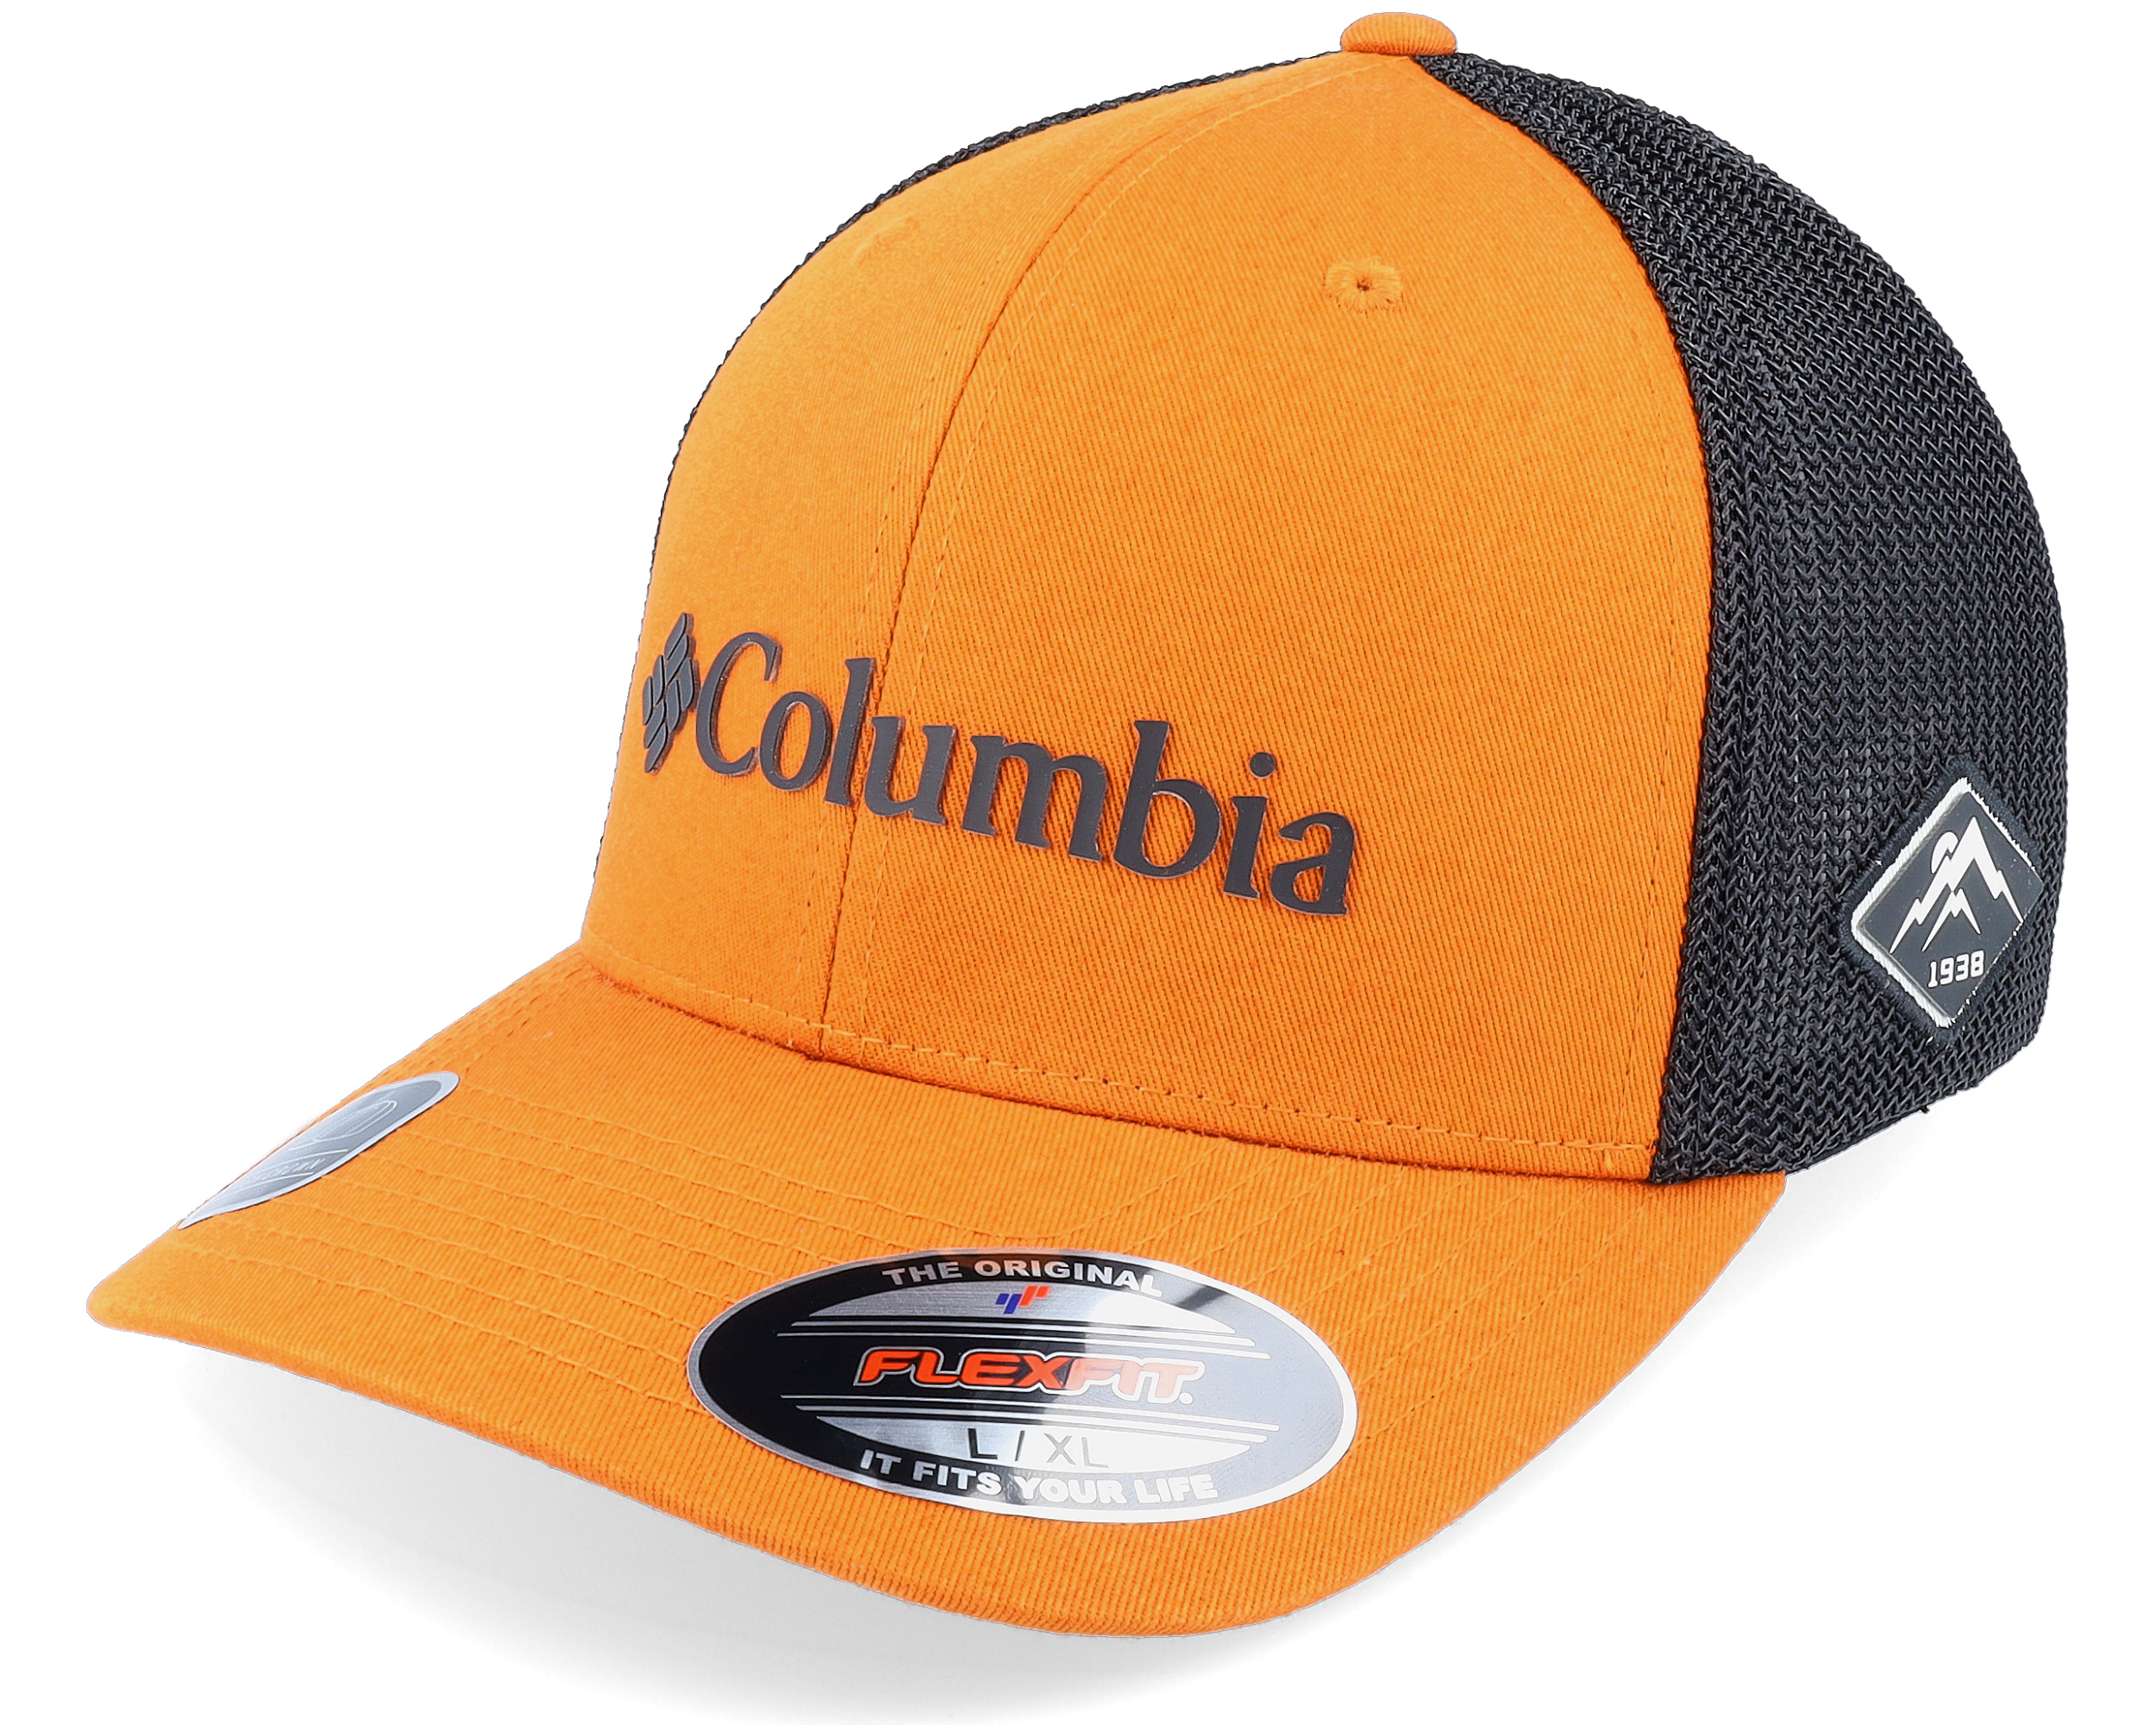 Mesh Ball Cap Warm Copper/Black Flexfit - Columbia cap